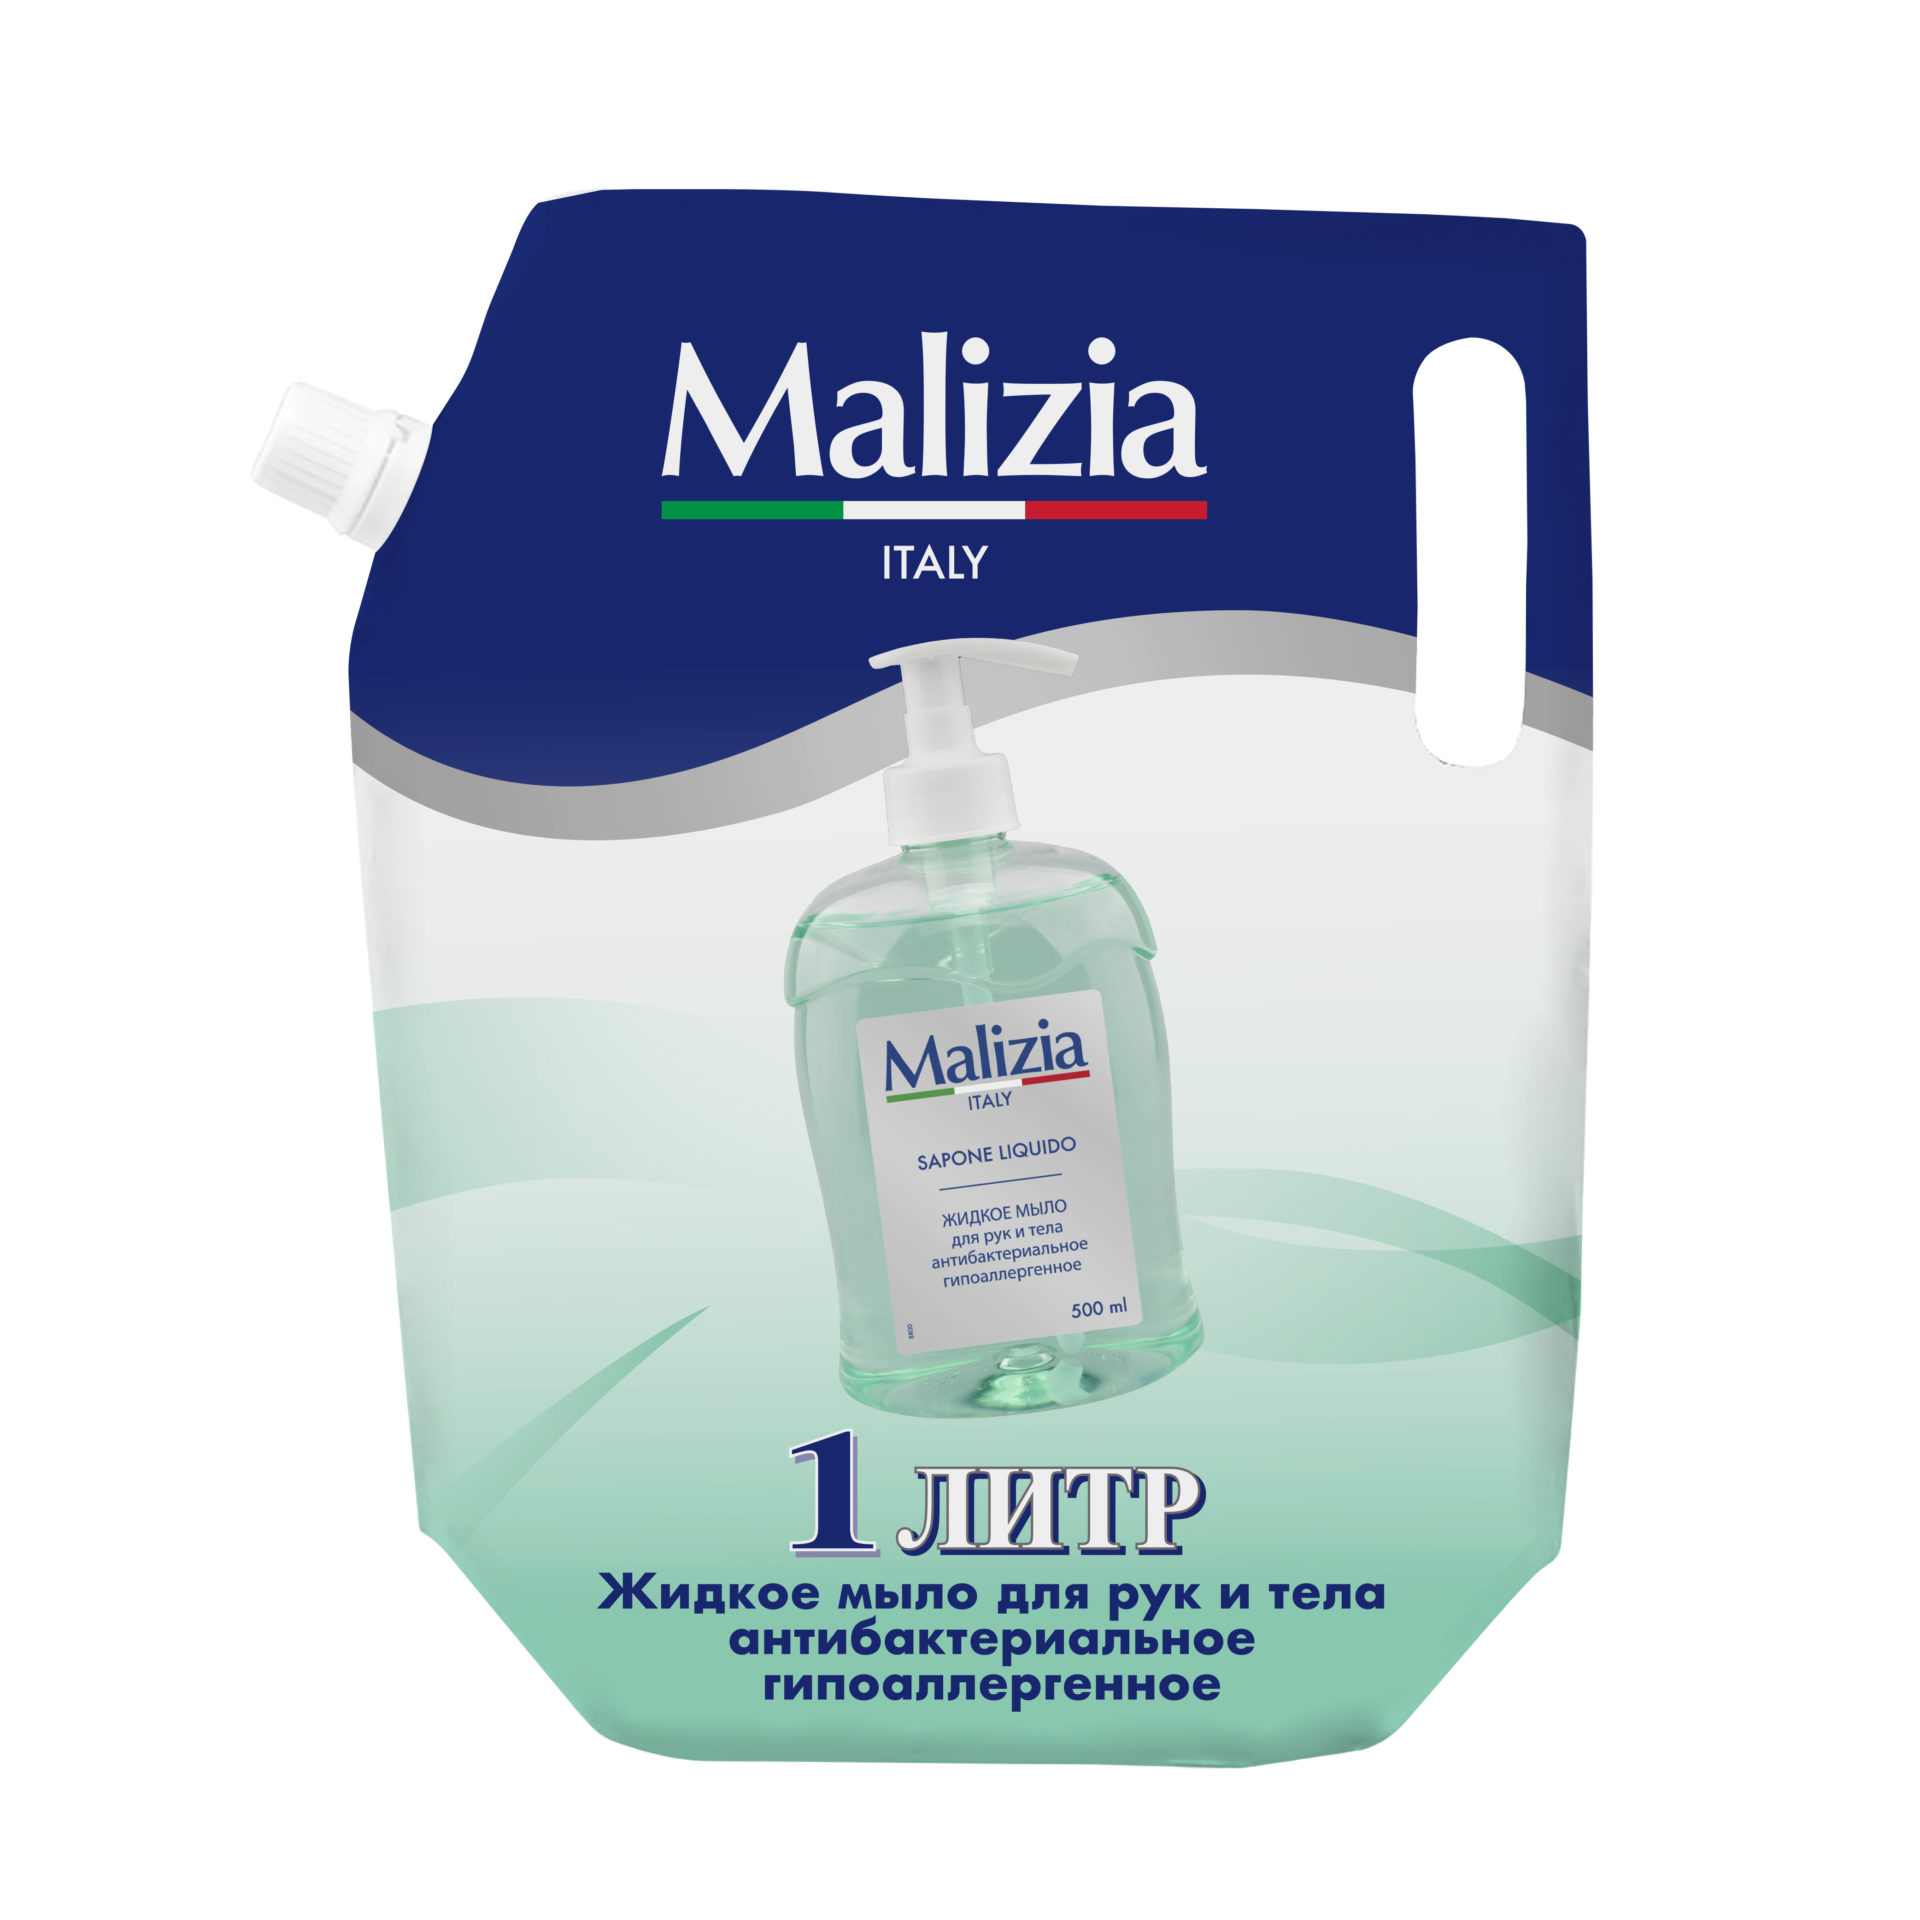 Malizia Жидкое мыло для рук и тела антибактериальное гипоаллергенное 1000 мл - MALIZIA